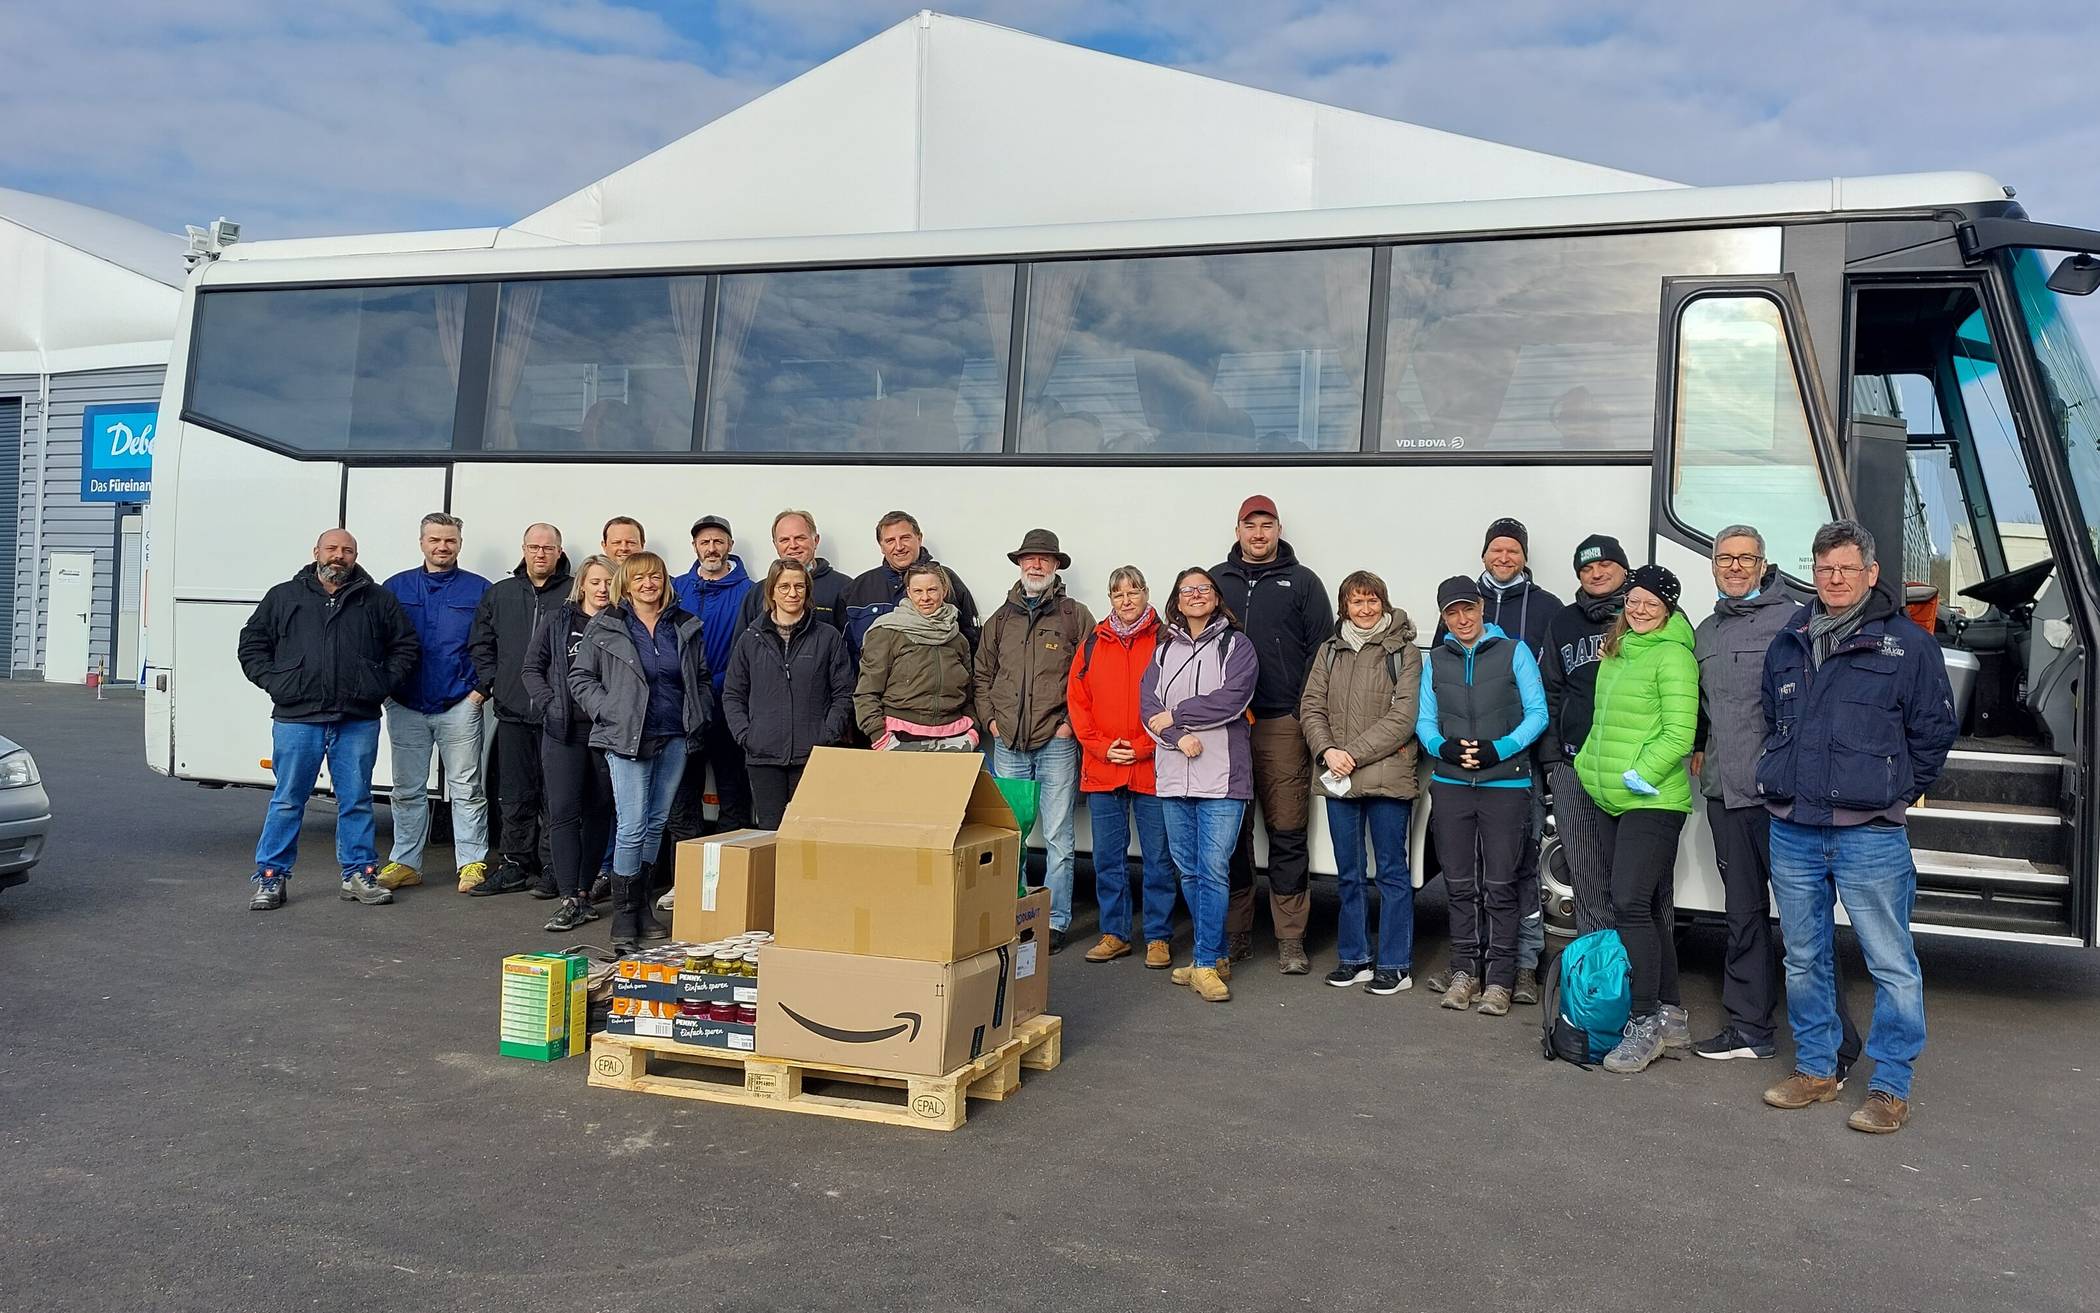  20 Helfende sind am vergangenen Wochenende aus Erkrath mit Busunternehmer Bernd Herrmann unter der Orga-Leitung von Marten Wirtz ins Ahrtal gefahren.  